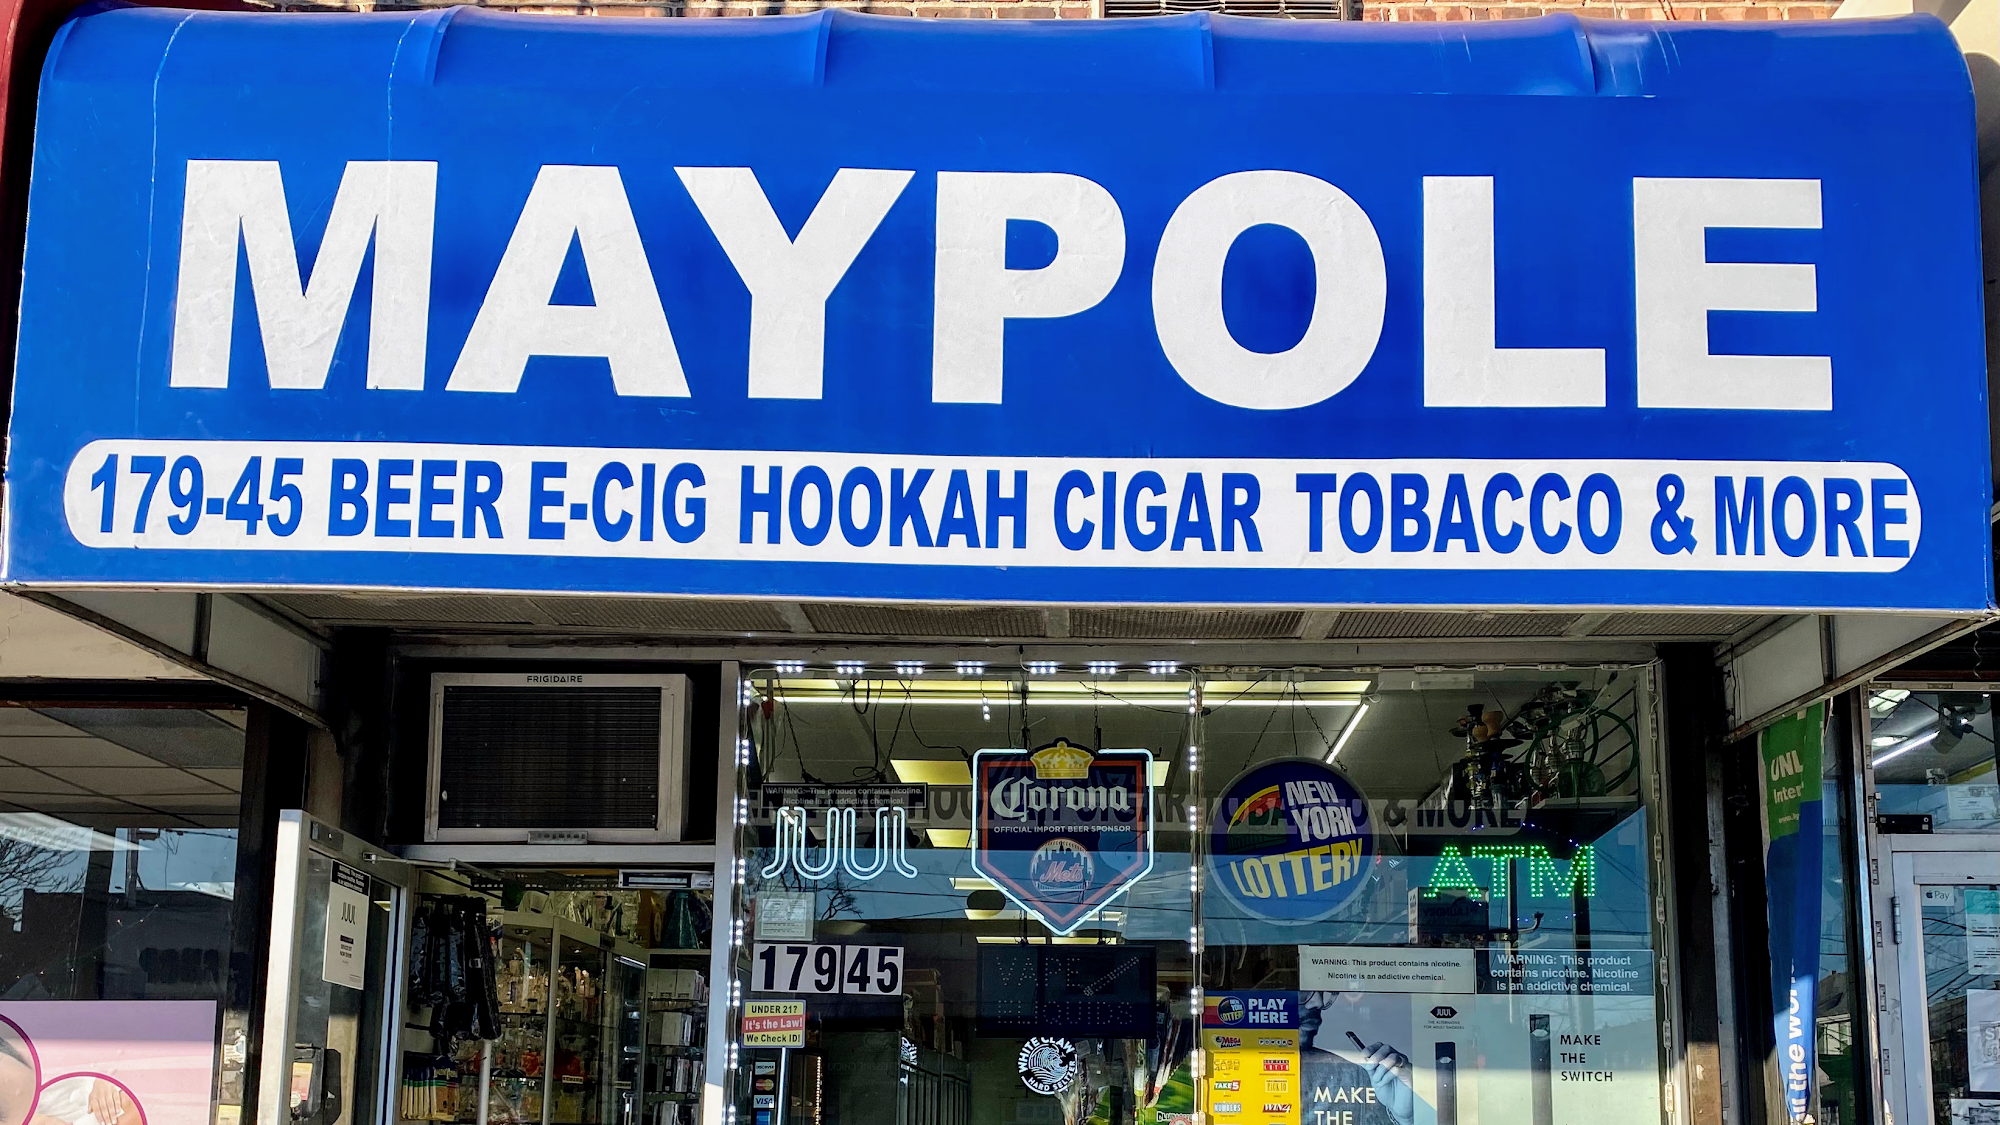 Maypole Smoke Shop